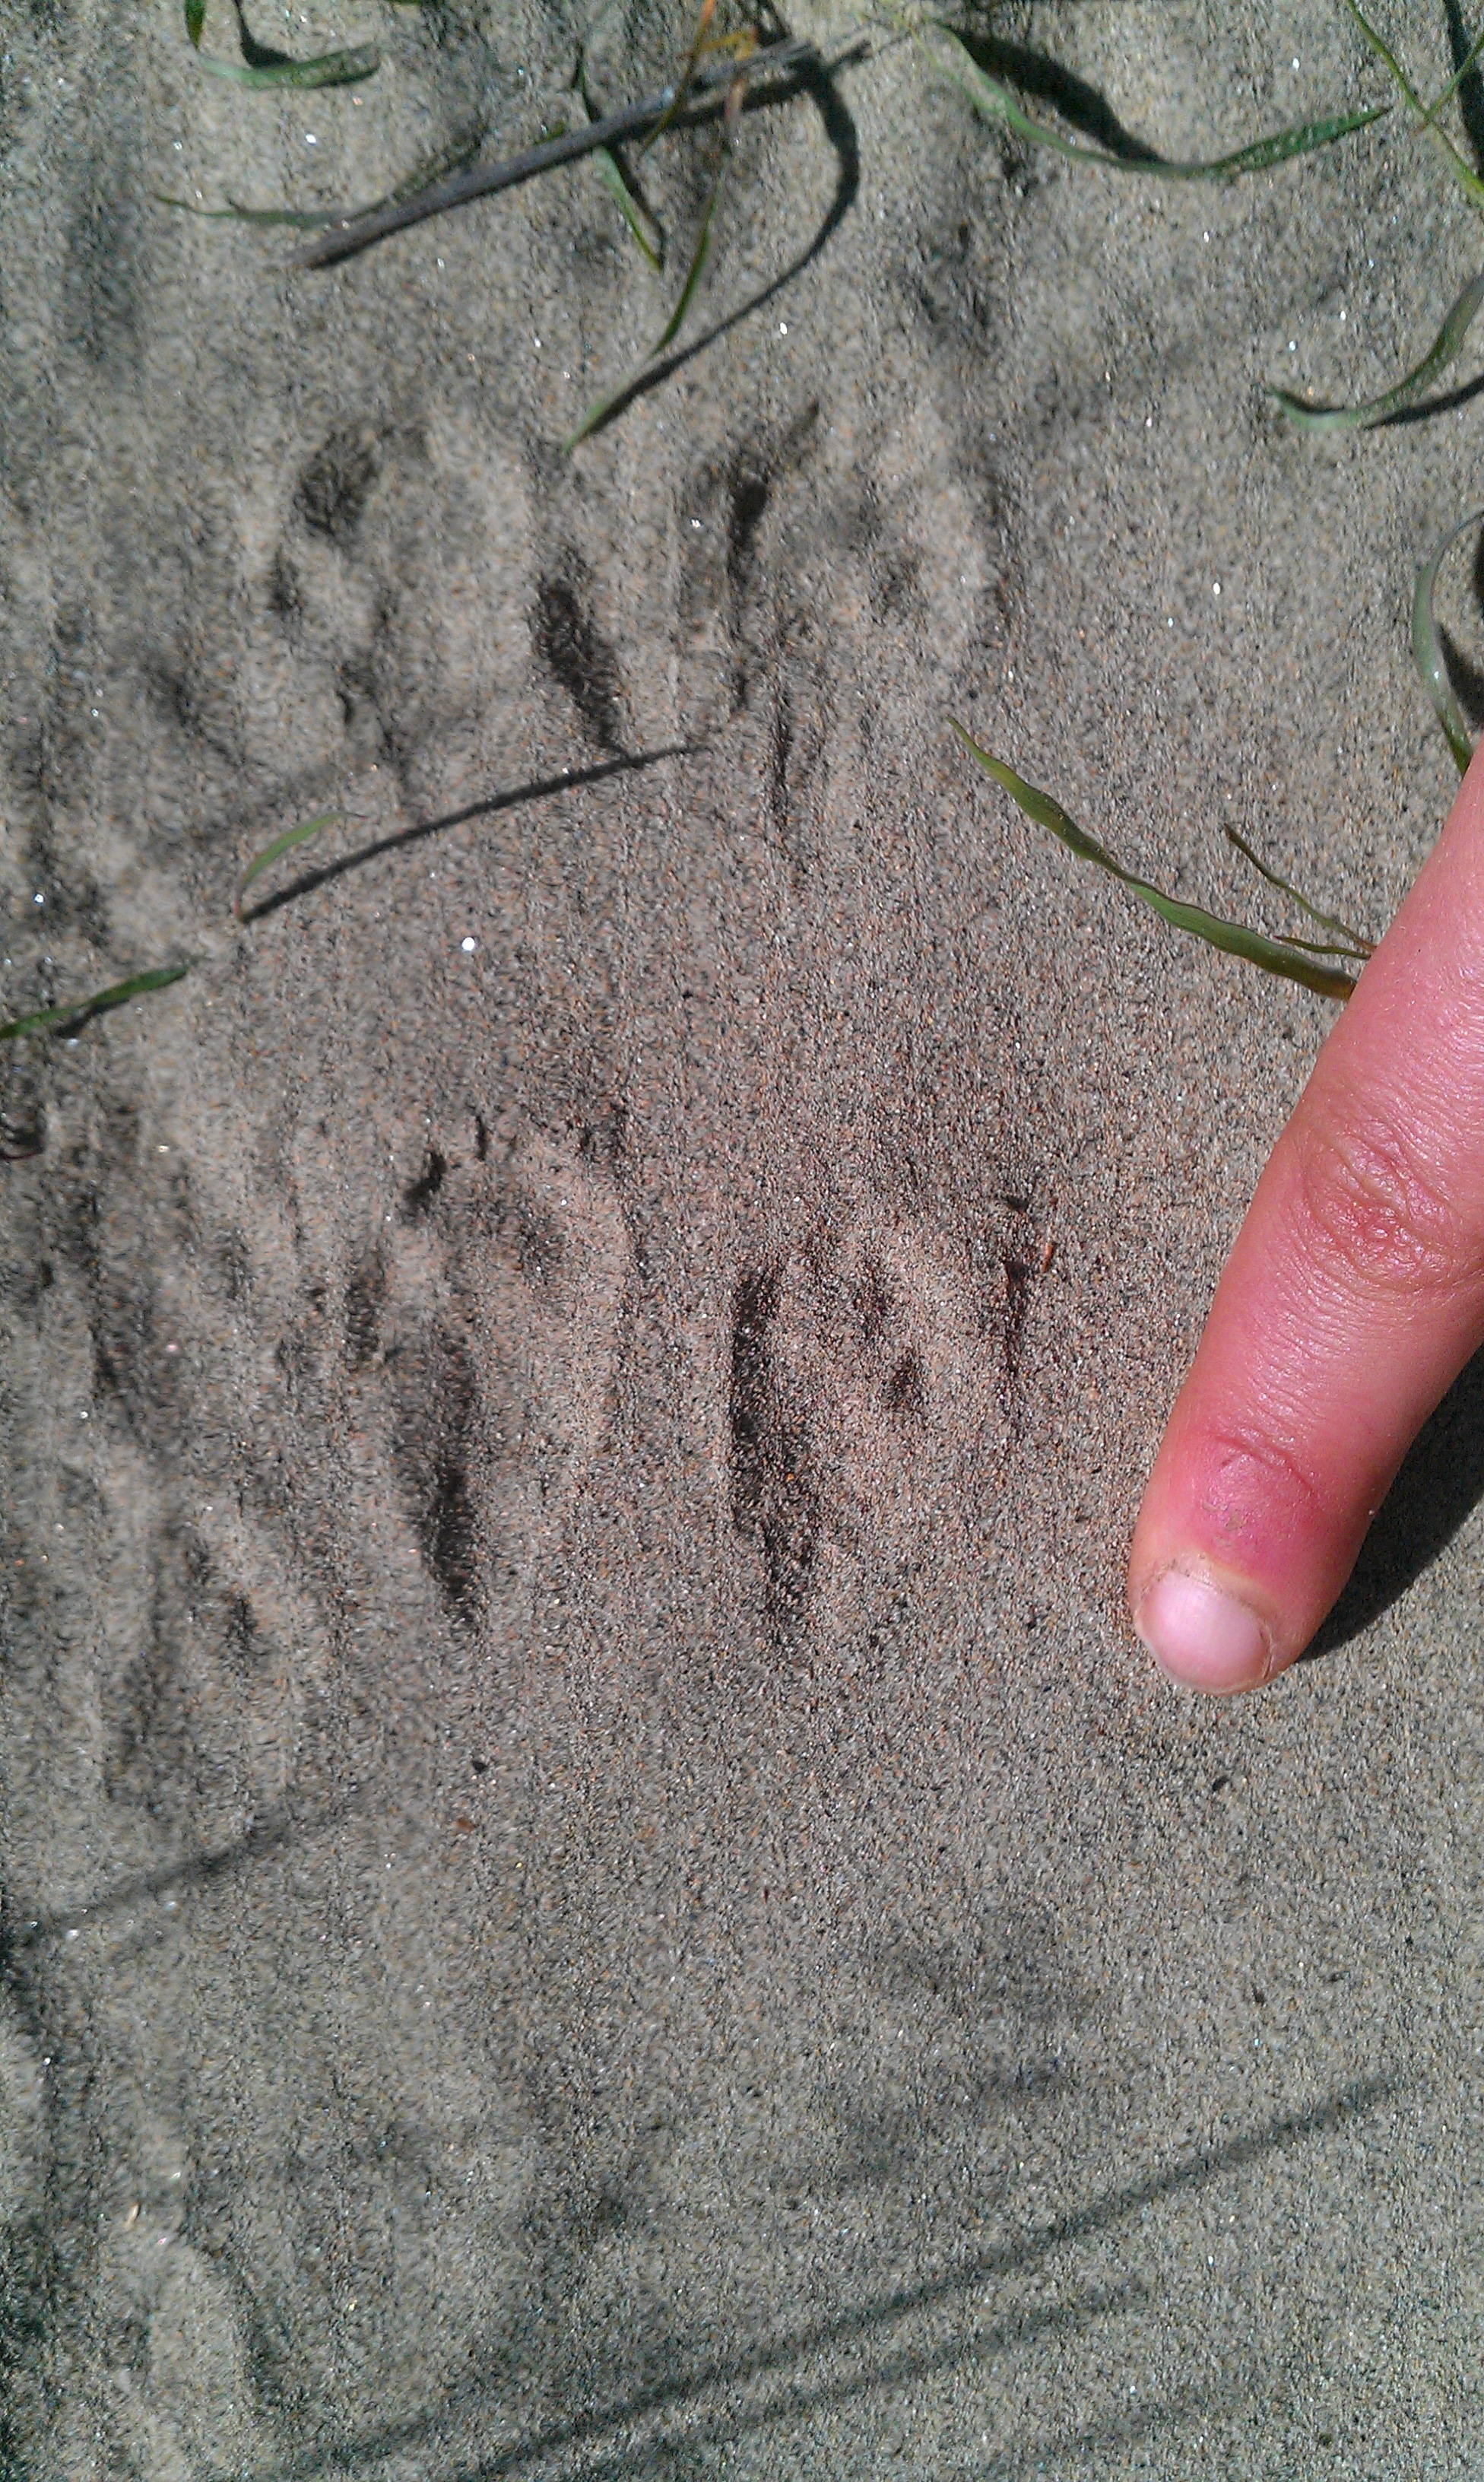 kangaroo footprints clip art - photo #48